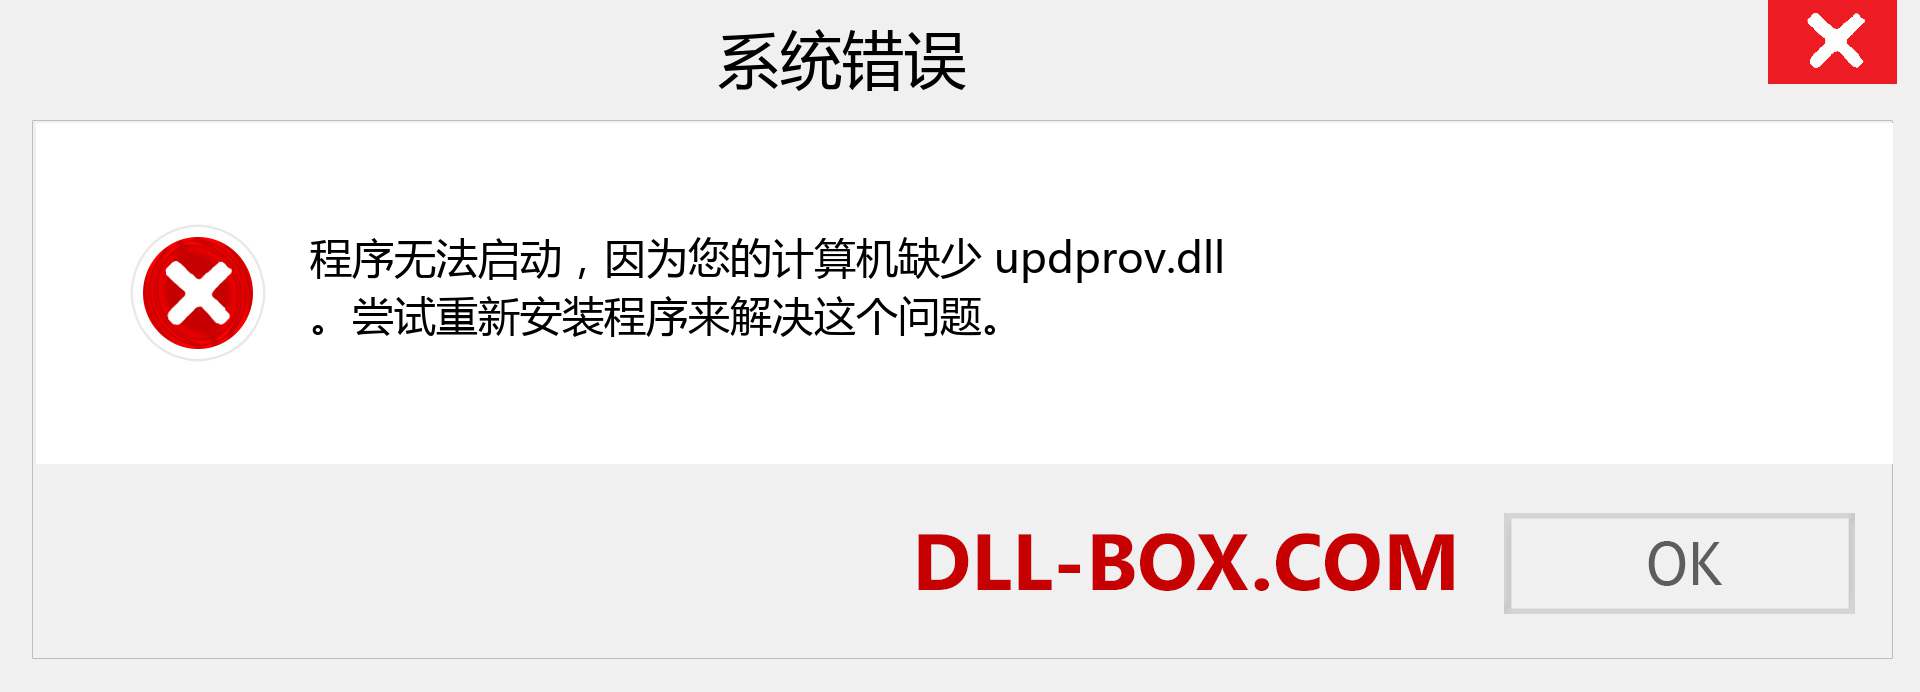 updprov.dll 文件丢失？。 适用于 Windows 7、8、10 的下载 - 修复 Windows、照片、图像上的 updprov dll 丢失错误